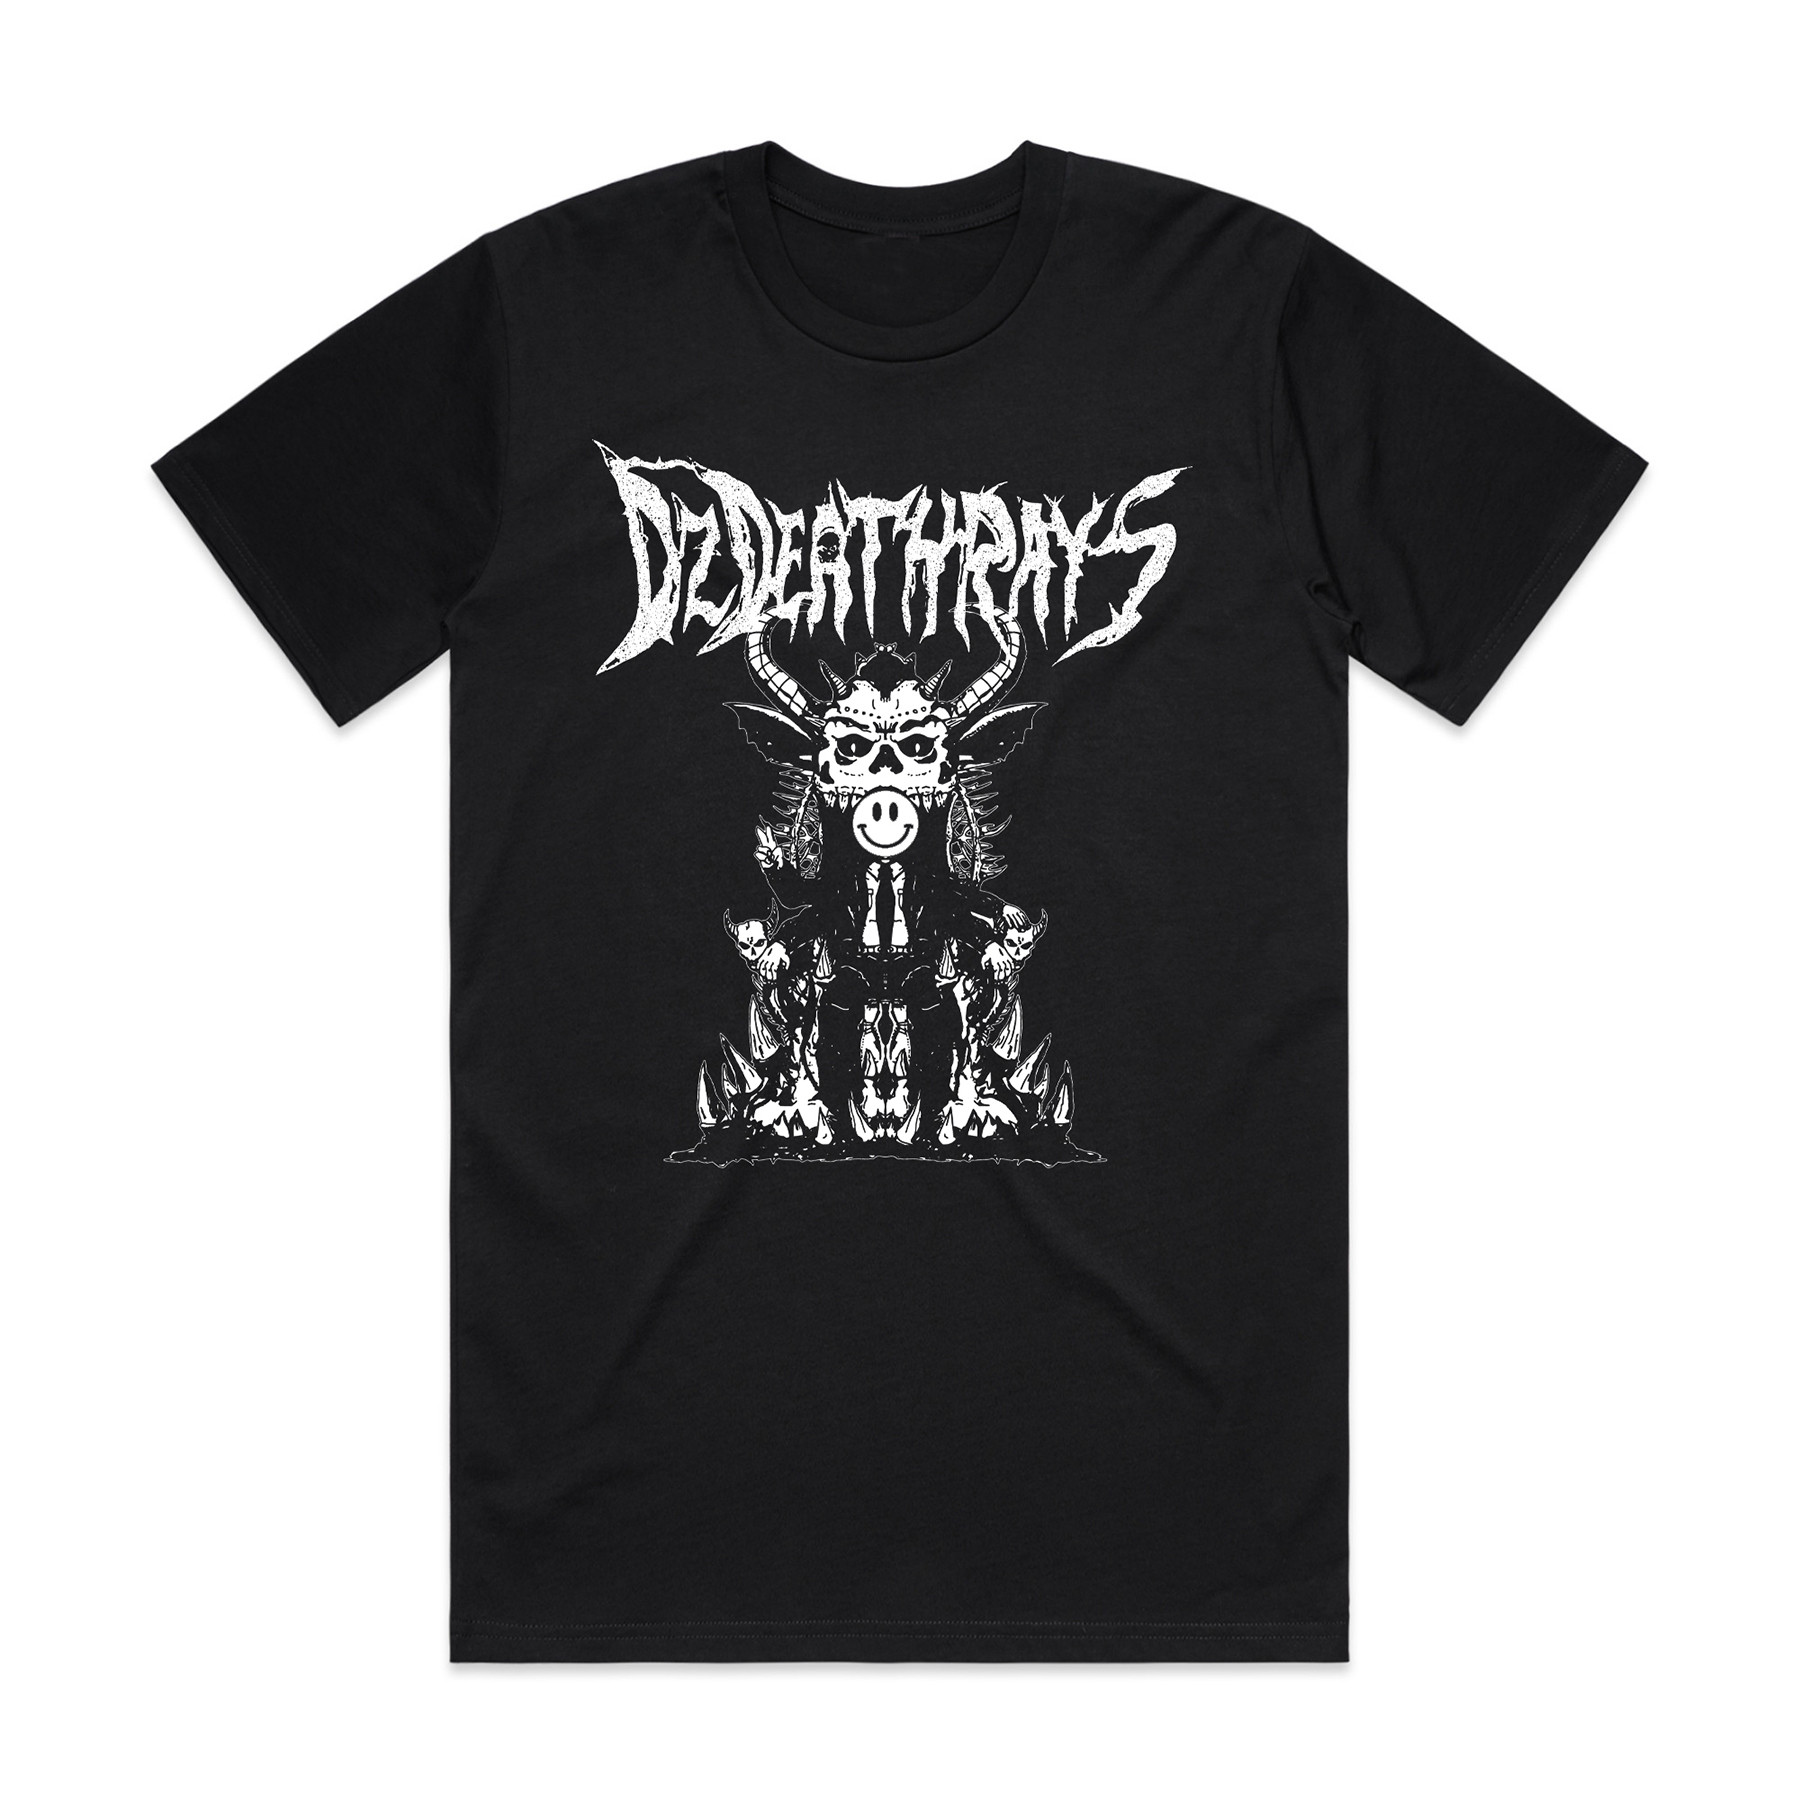 Corporate Metal    - Black Tshirt